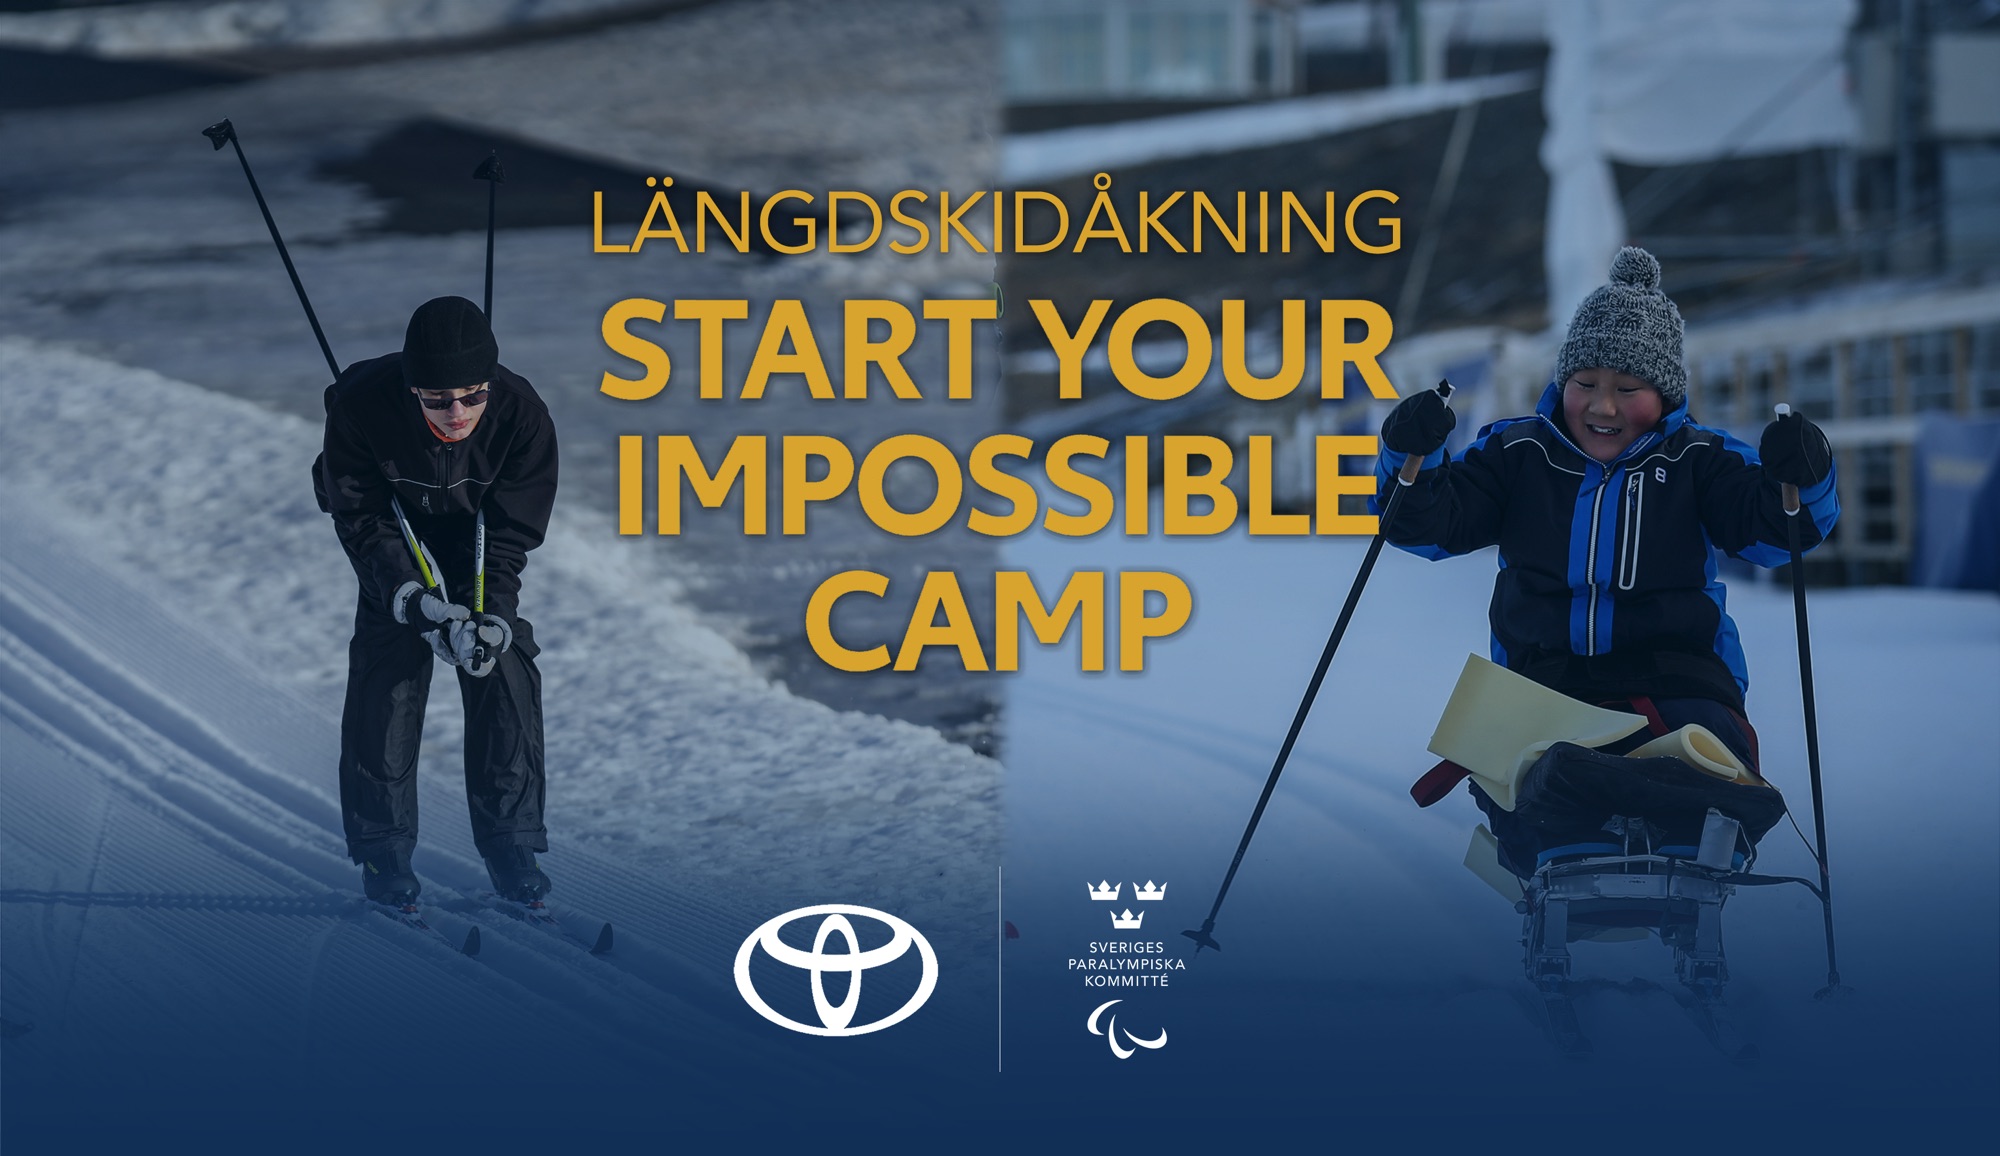 Två bilder på längdskidåkare, en stående och en sittande i sitski (skidkälke). Text: Längdskidåkning, Start Your Impossible Camp. Logotyper för Sveriges Paralympiska Kommitté och Toyota.